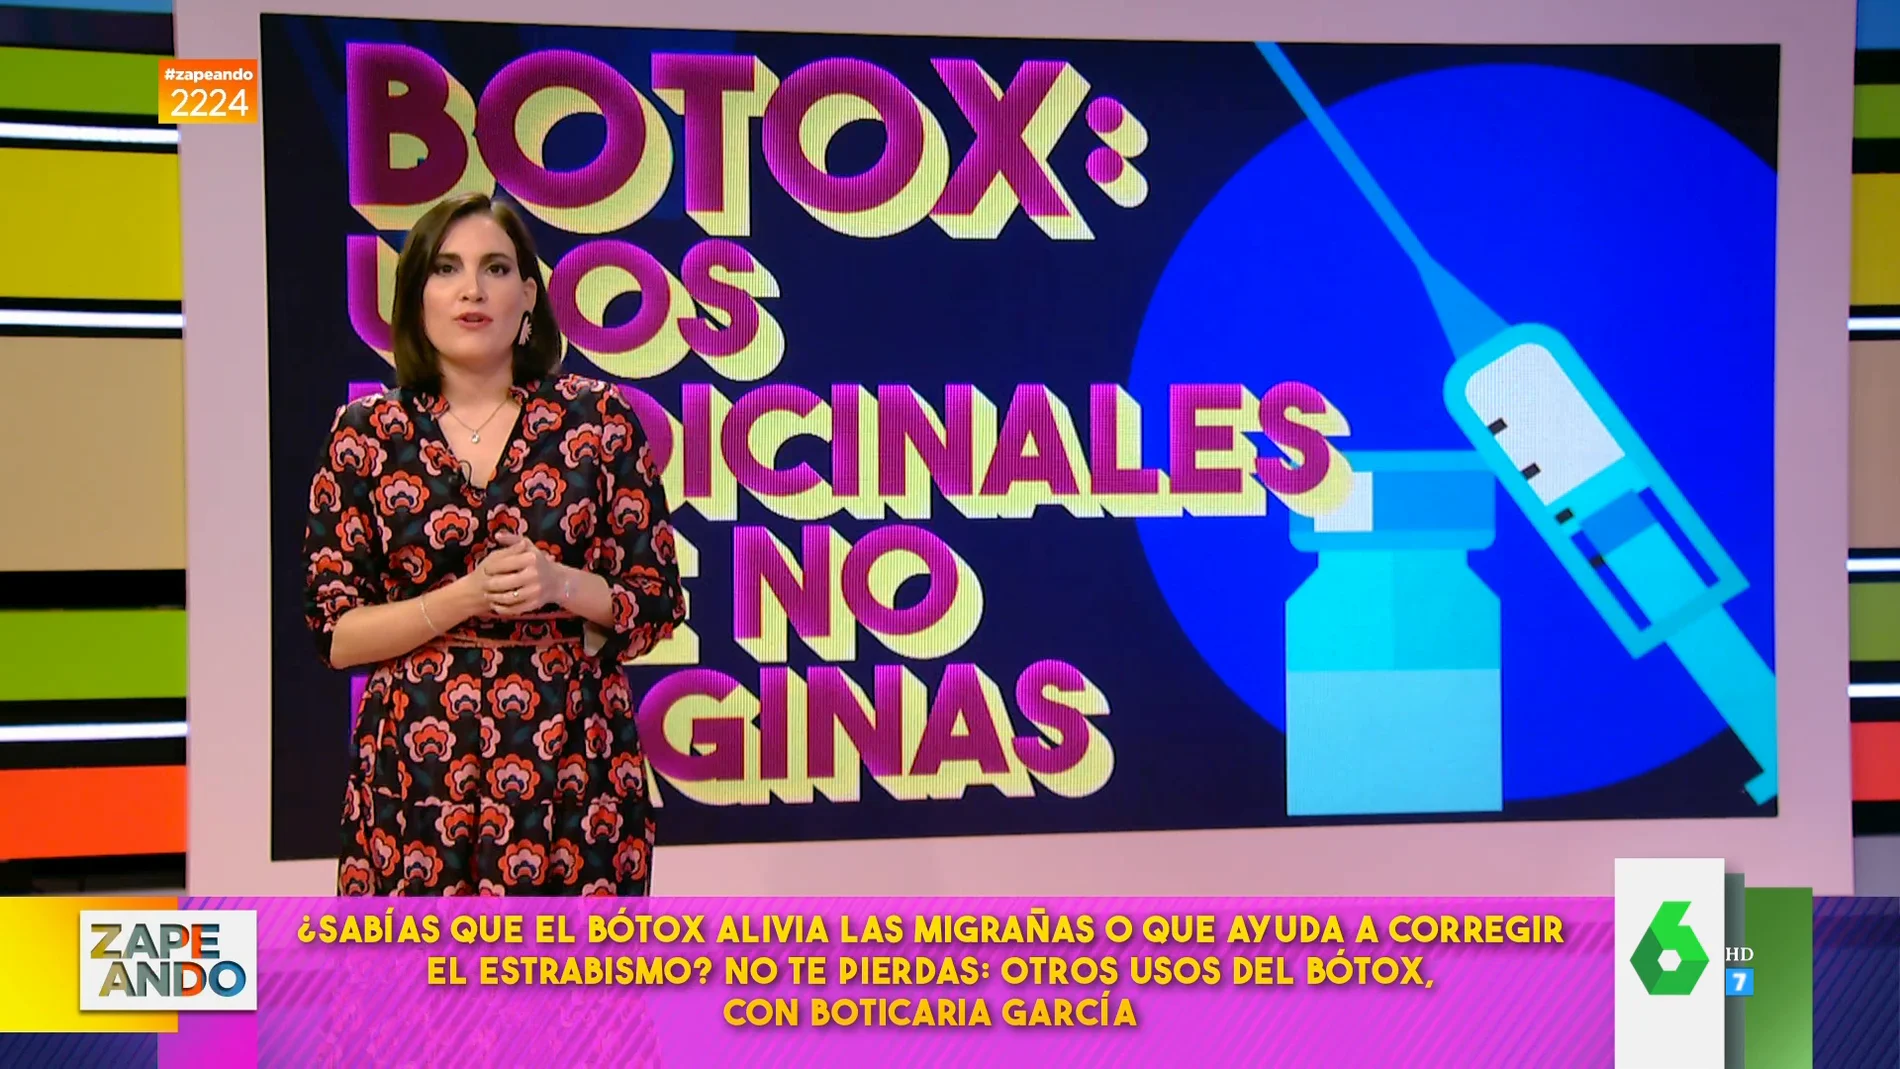 Boticaria García explica que usa bótox por la sudoración excesiva: "Lo digo abiertamente, no me escondo y funciona muy bien"